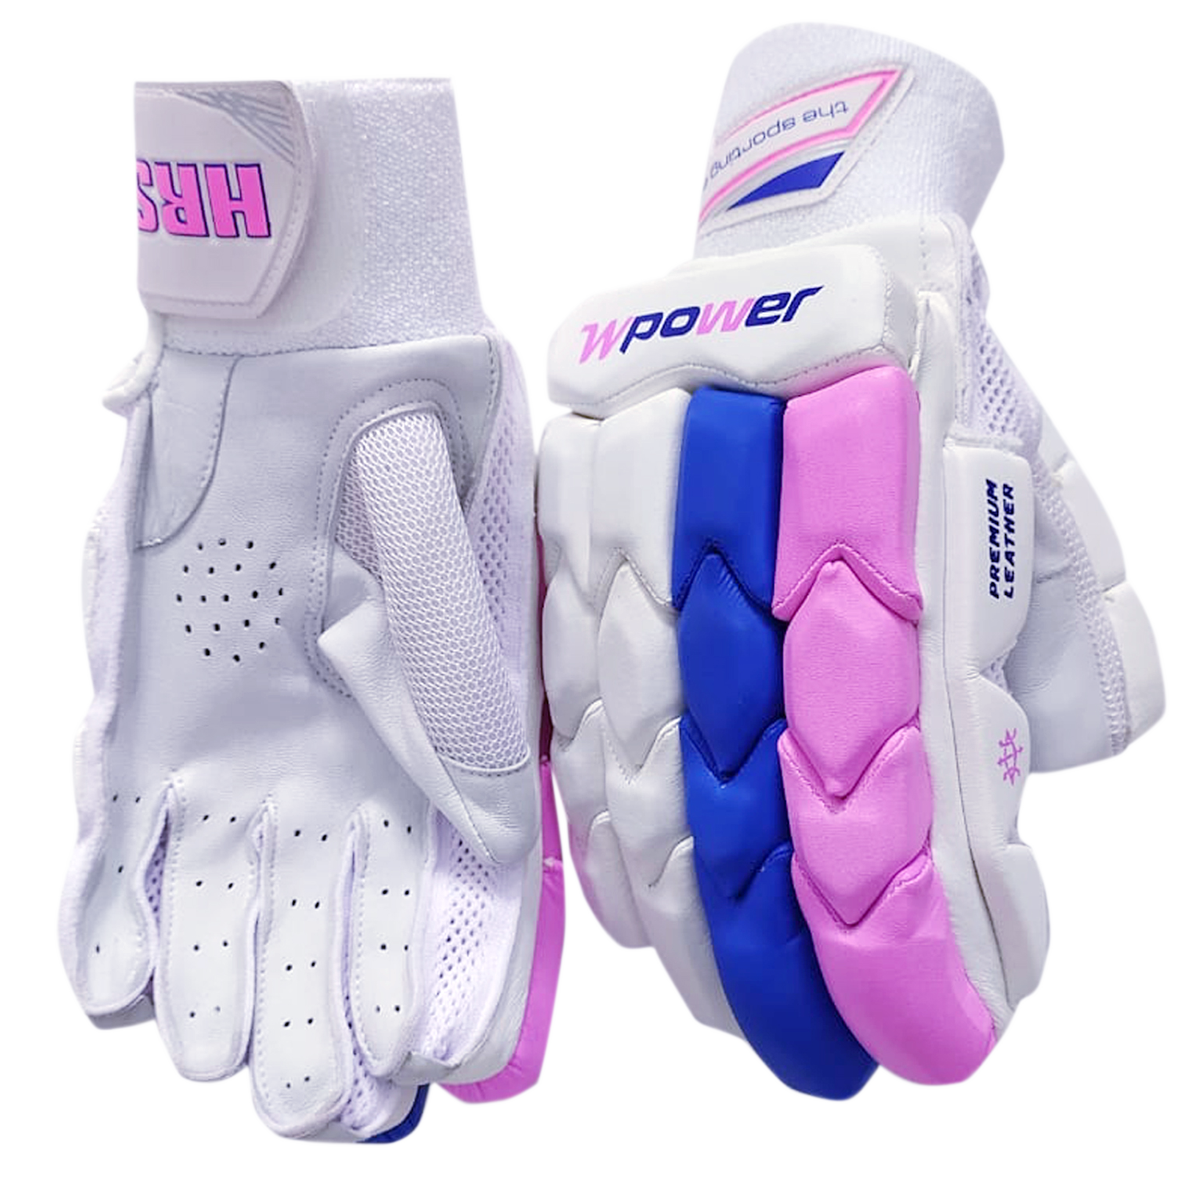 Wpower batting Gloves